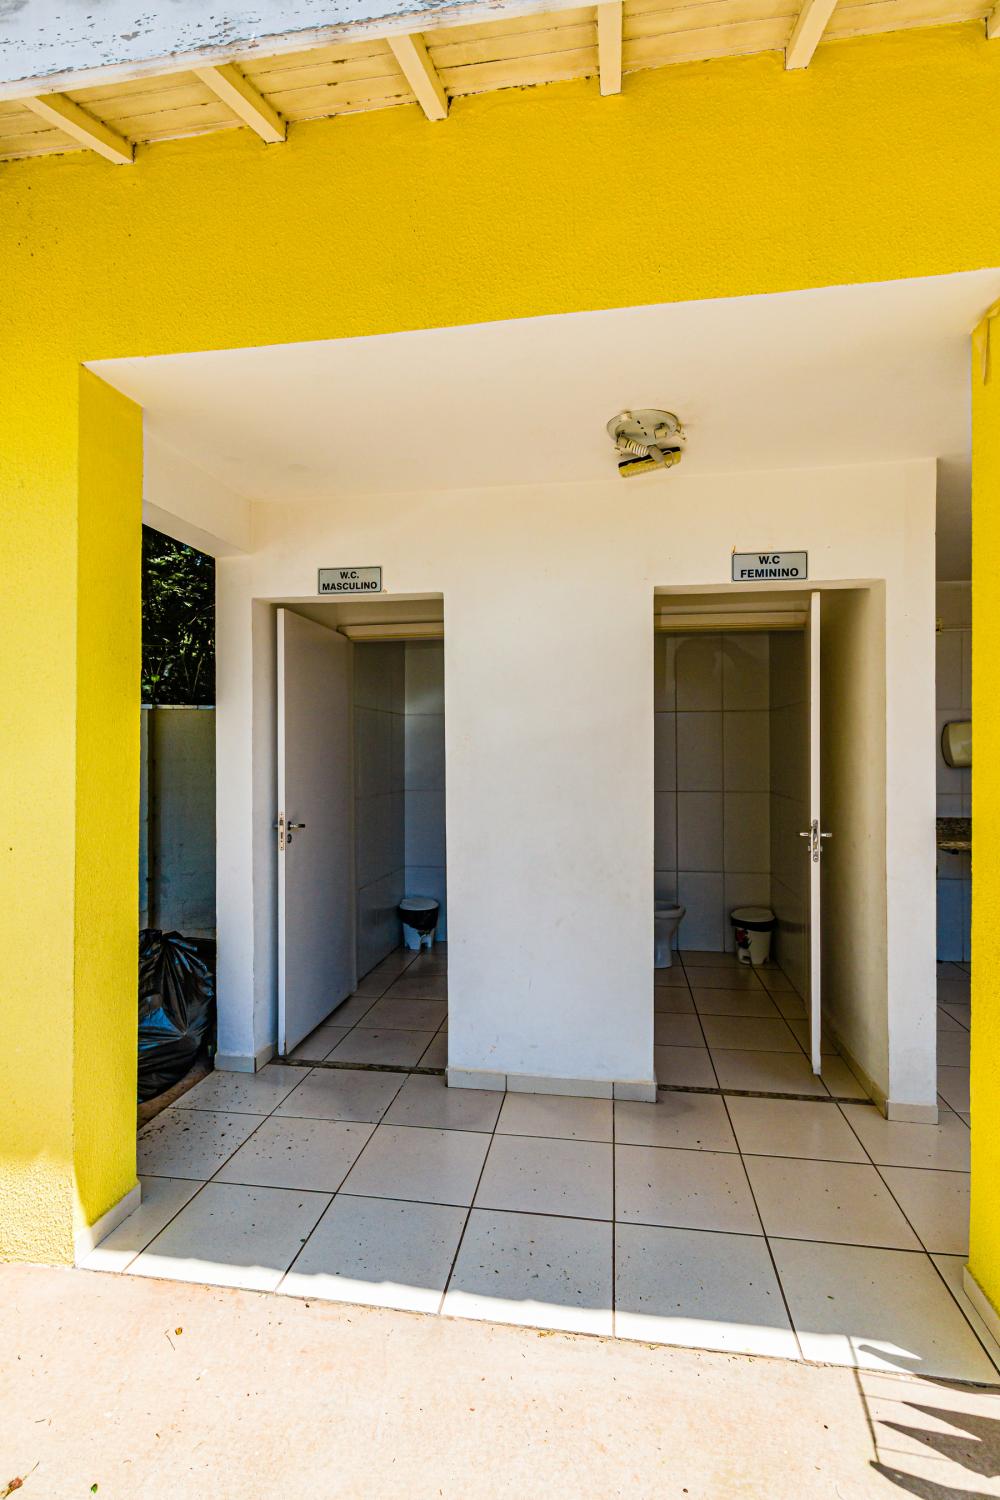 Apartamento com ótima localização no Bairro Piracicamirim com dois dormitórios; Banheiro, uma garagem com elevador 7° andar., perto de supermercado, postos de gasolina, farmacias e bancos.